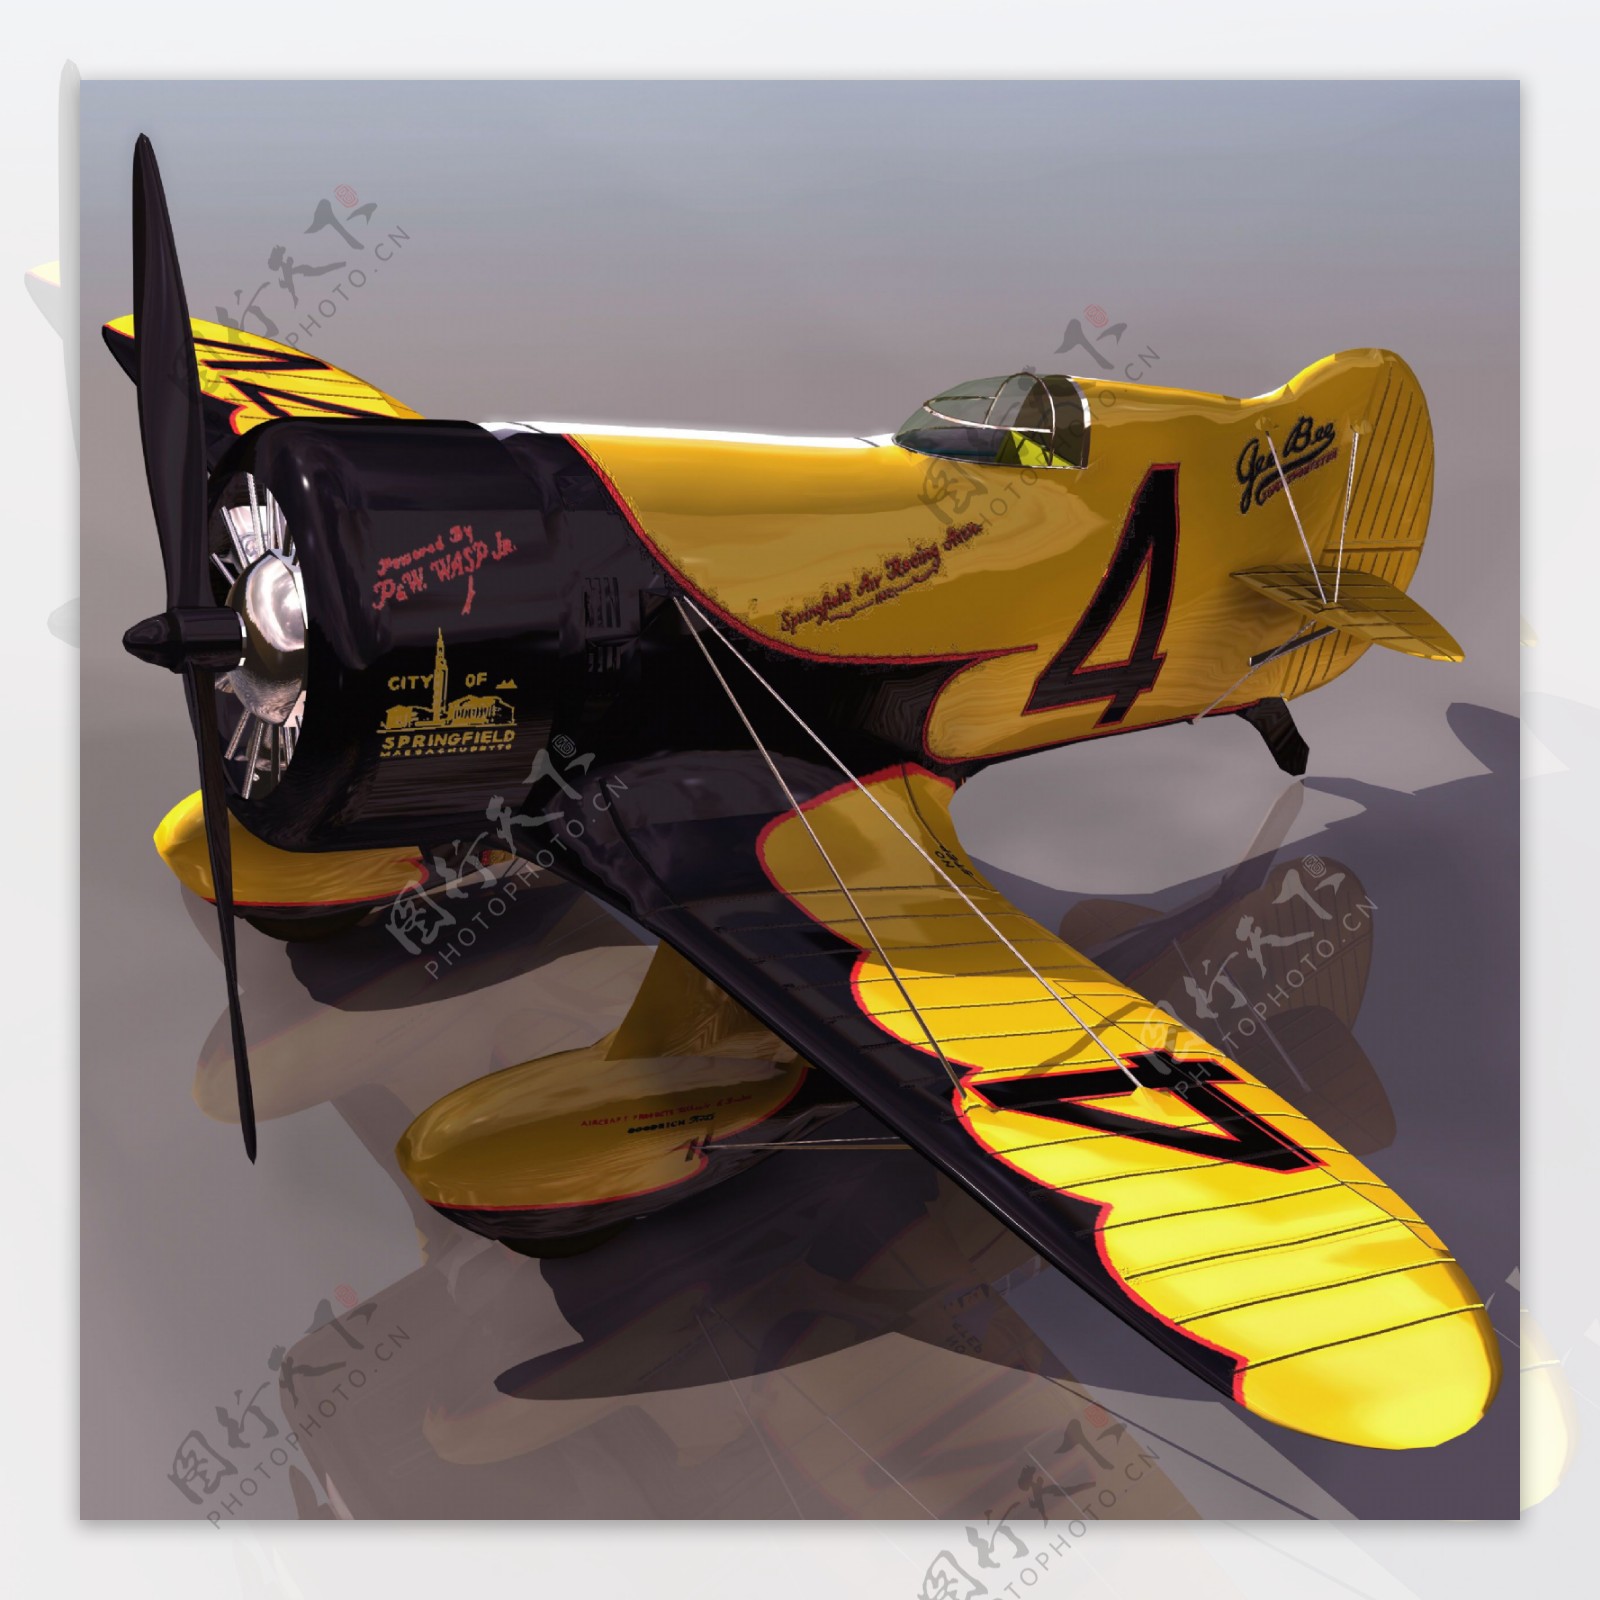 GEEBEE飞机模型035